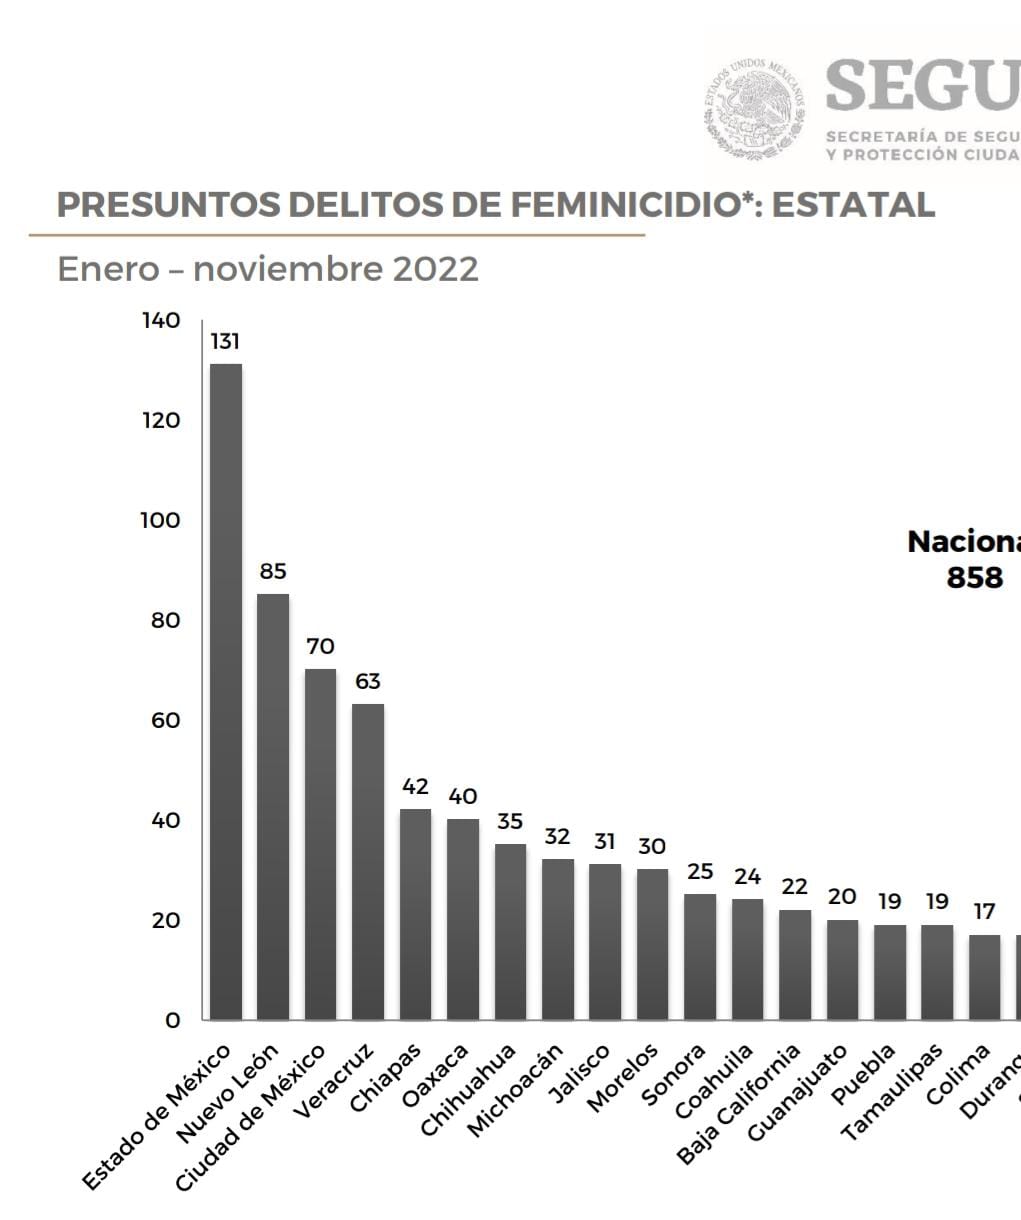 Puebla: Entre enero y noviembre de 2022 registró 19 feminicidios y 262 homicidios contra mujeres